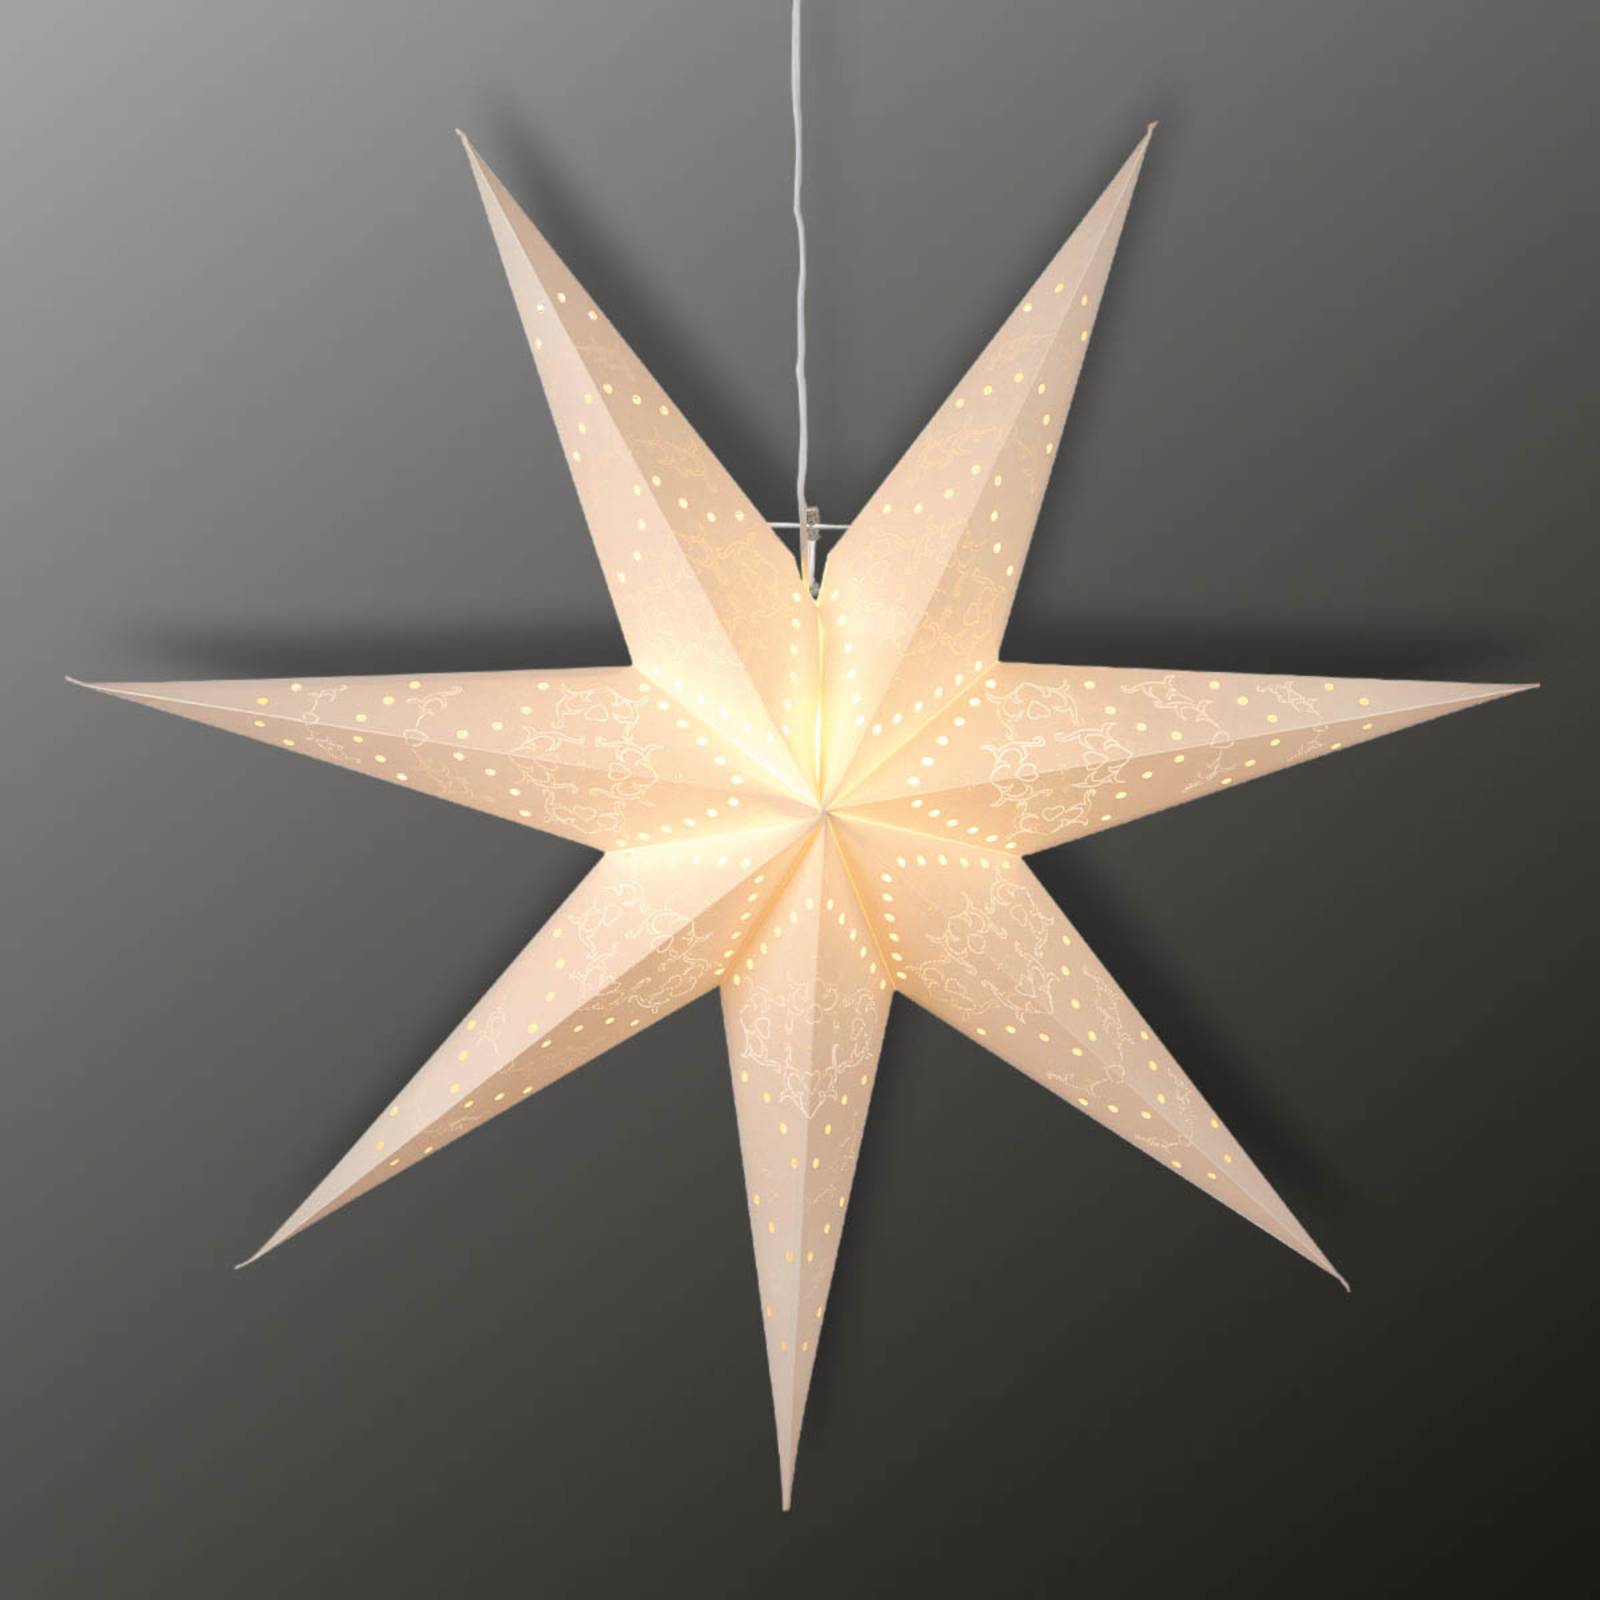 Siebenzackige Sensy Star Dekorationsleuchte von STAR TRADING